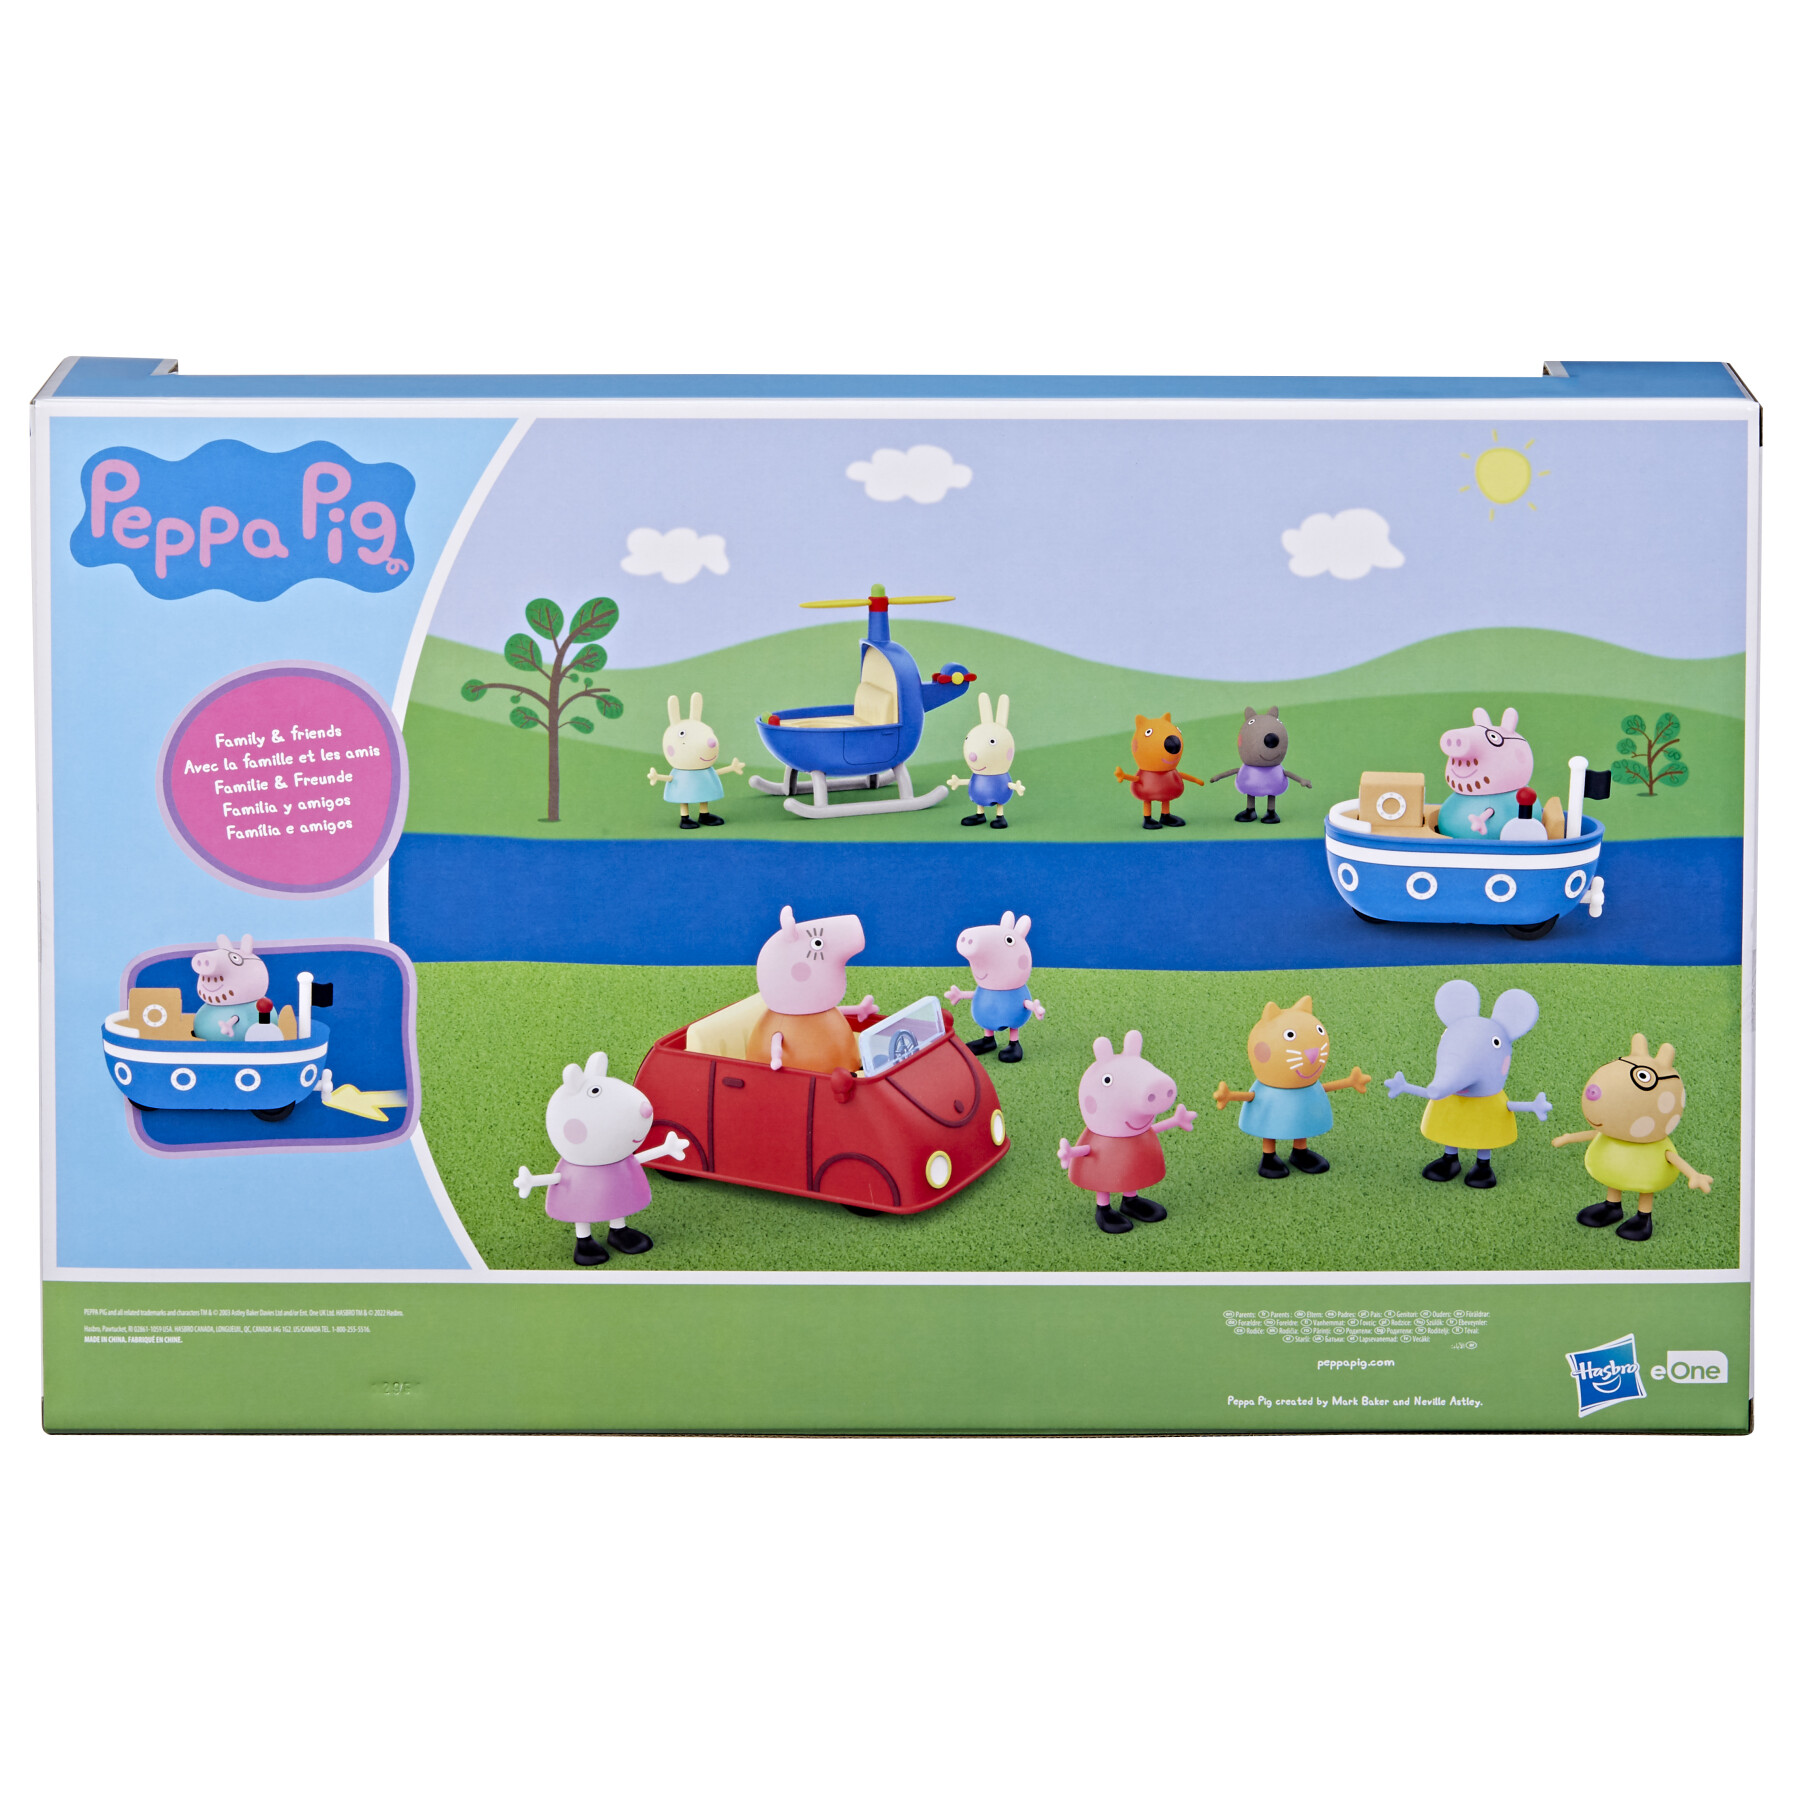 Peppa pig, parti con peppa!, giocattolo per età prescolare, set da 15 pezzi che include 12 action figure e 3 veicoli, dai 3 anni in su - PEPPA PIG